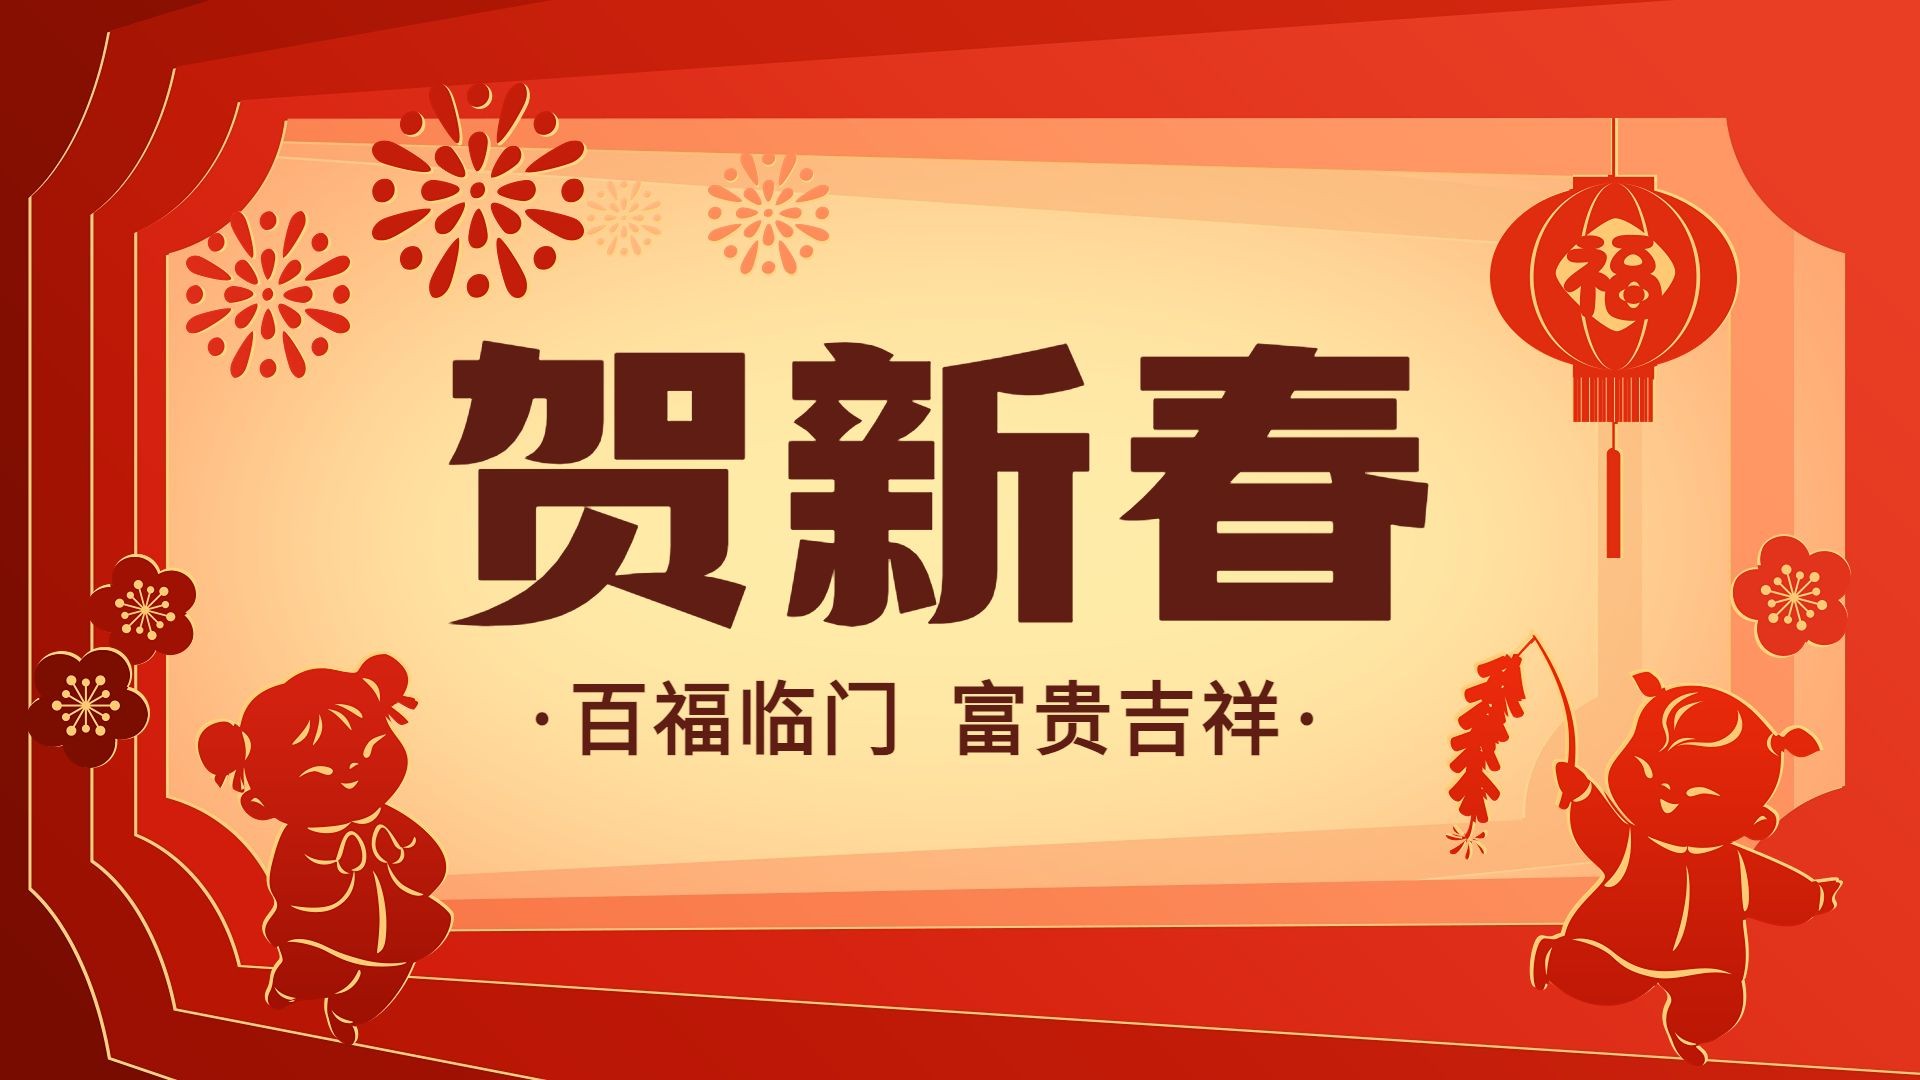 春节新年节日祝福小绿书套装公众号首图16:9头图图片封面预览效果